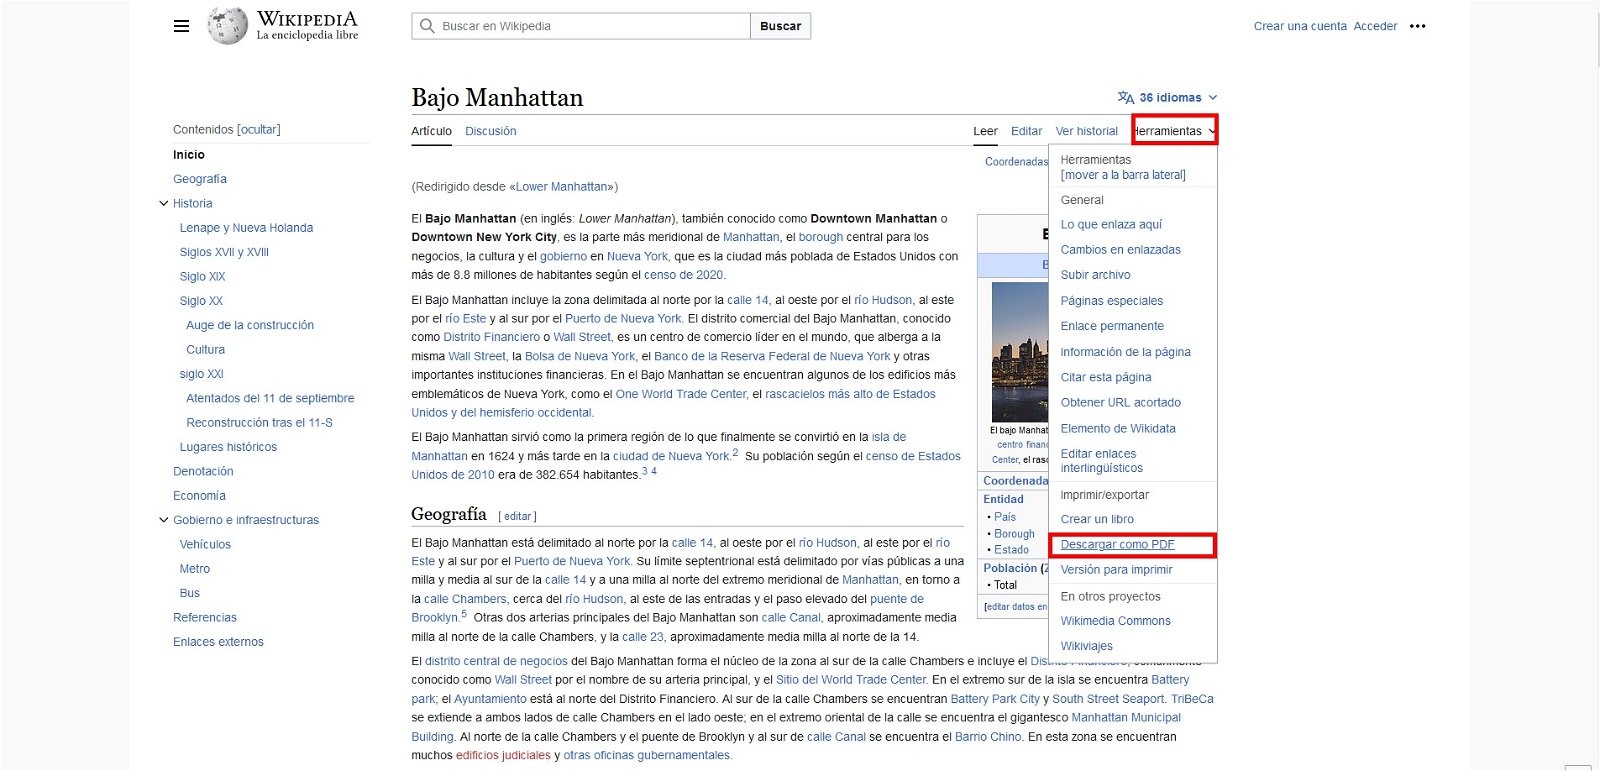 Captura de pantalla de la Wikipedia